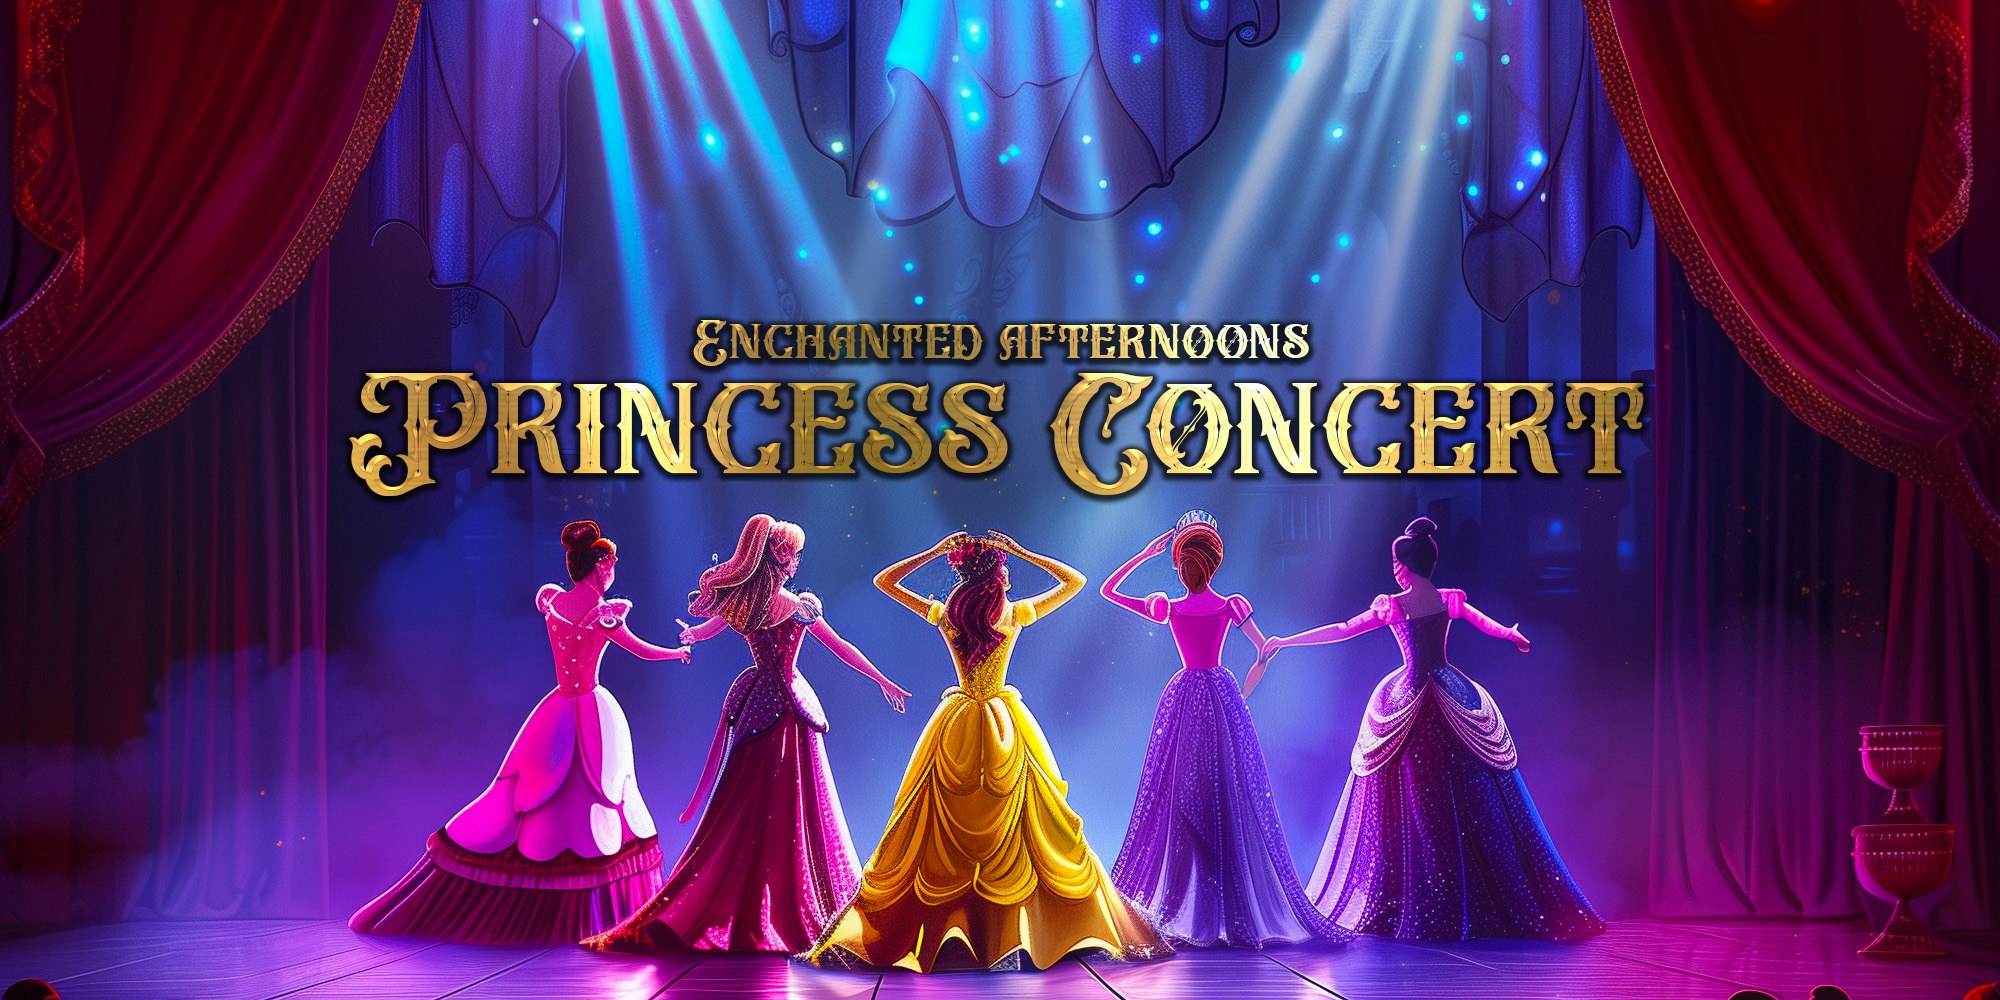 👑✨ The Princess Concert Comes To Edinburgh ✨👑